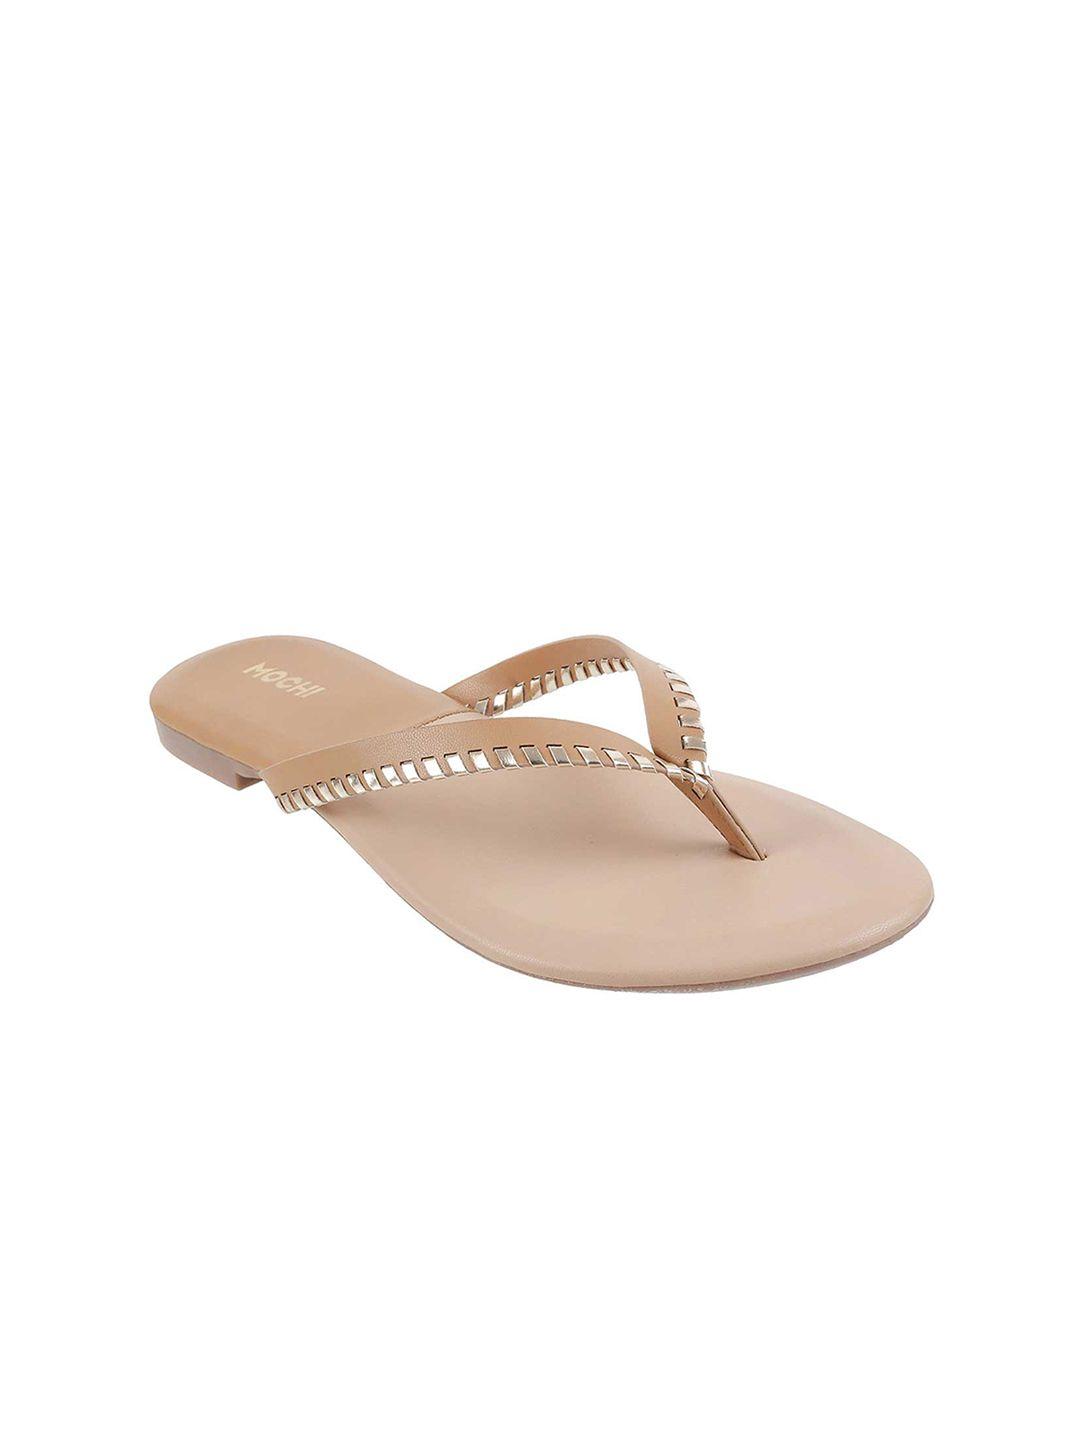 mochi women beige embellished open toe flats